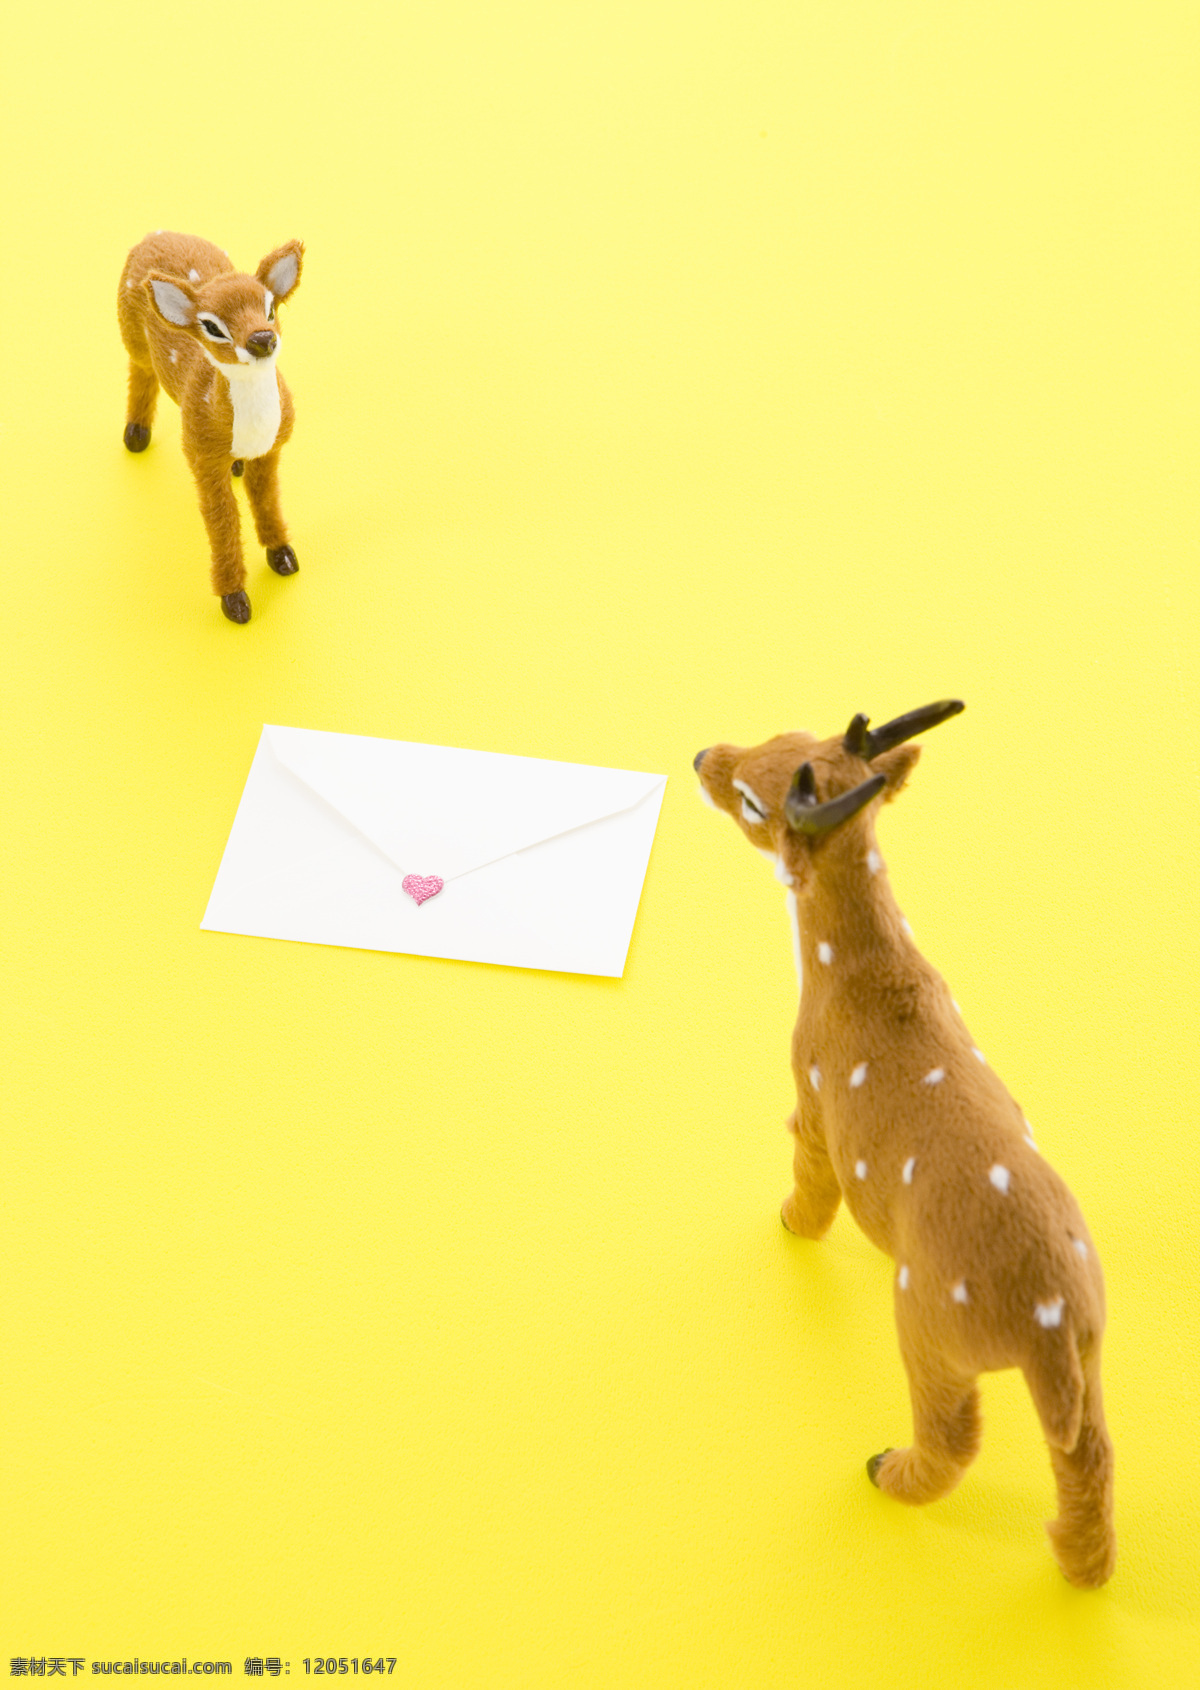 小鹿图片素材 小鹿 信封 爱情 动物 黄色背景 其他类别 生活百科